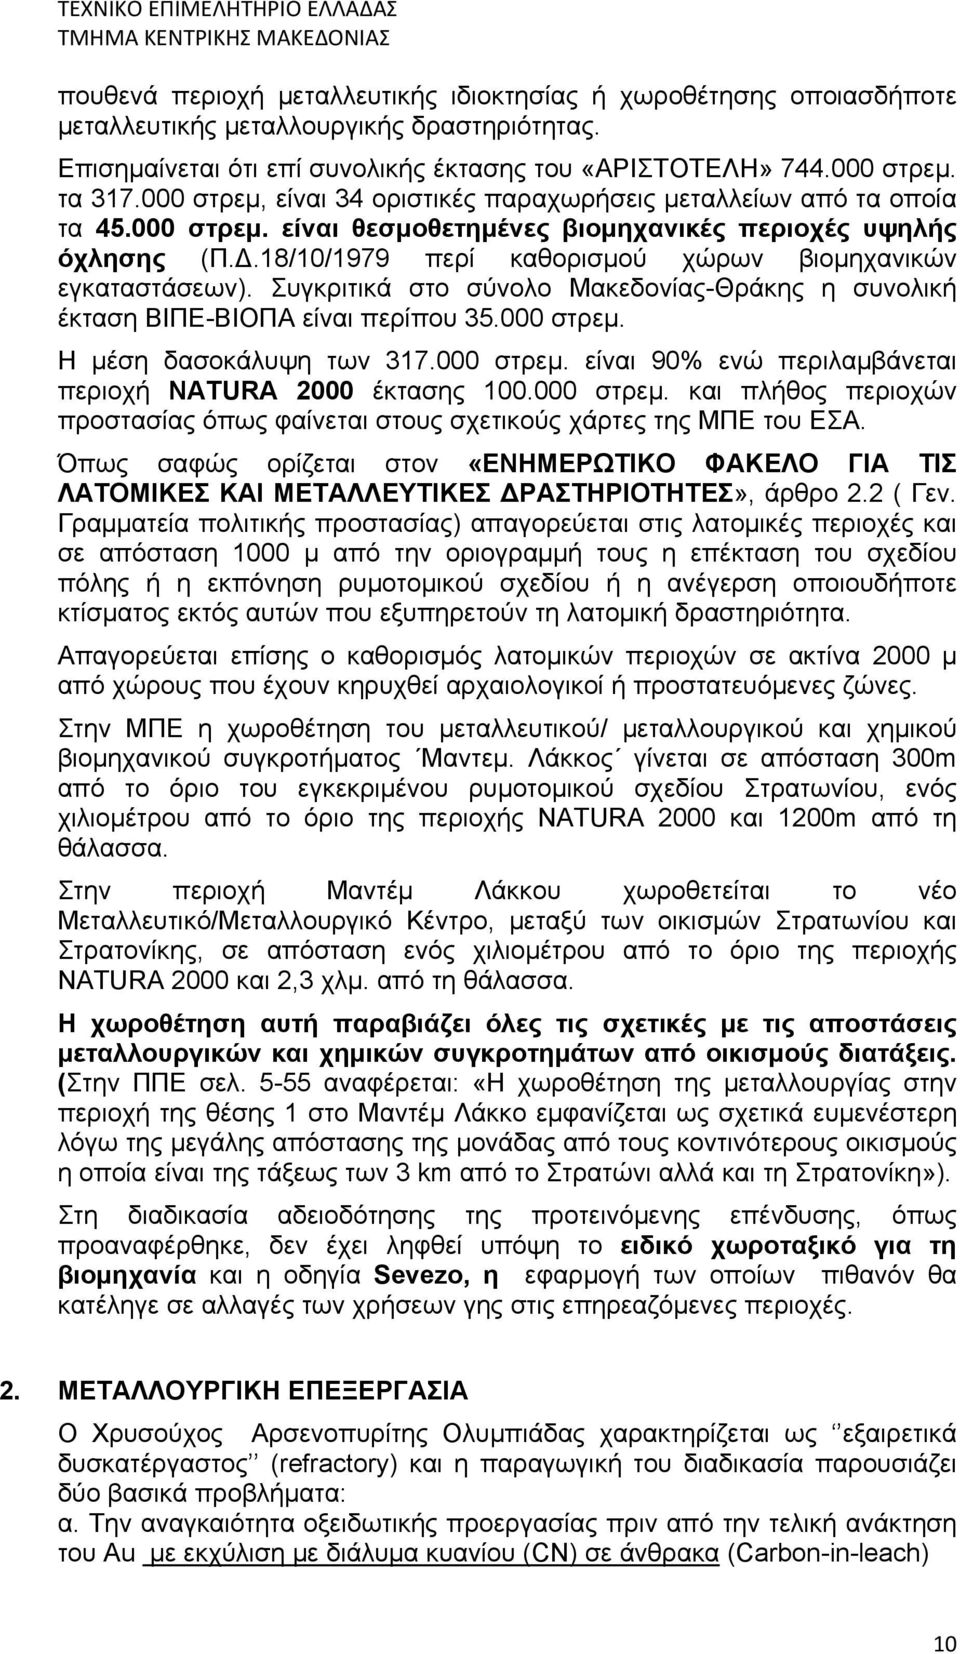 18/10/1979 περί καθορισμού χώρων βιομηχανικών εγκαταστάσεων). Συγκριτικά στο σύνολο Μακεδονίας-Θράκης η συνολική έκταση ΒΙΠΕ-ΒΙΟΠΑ είναι περίπου 35.000 στρεμ.